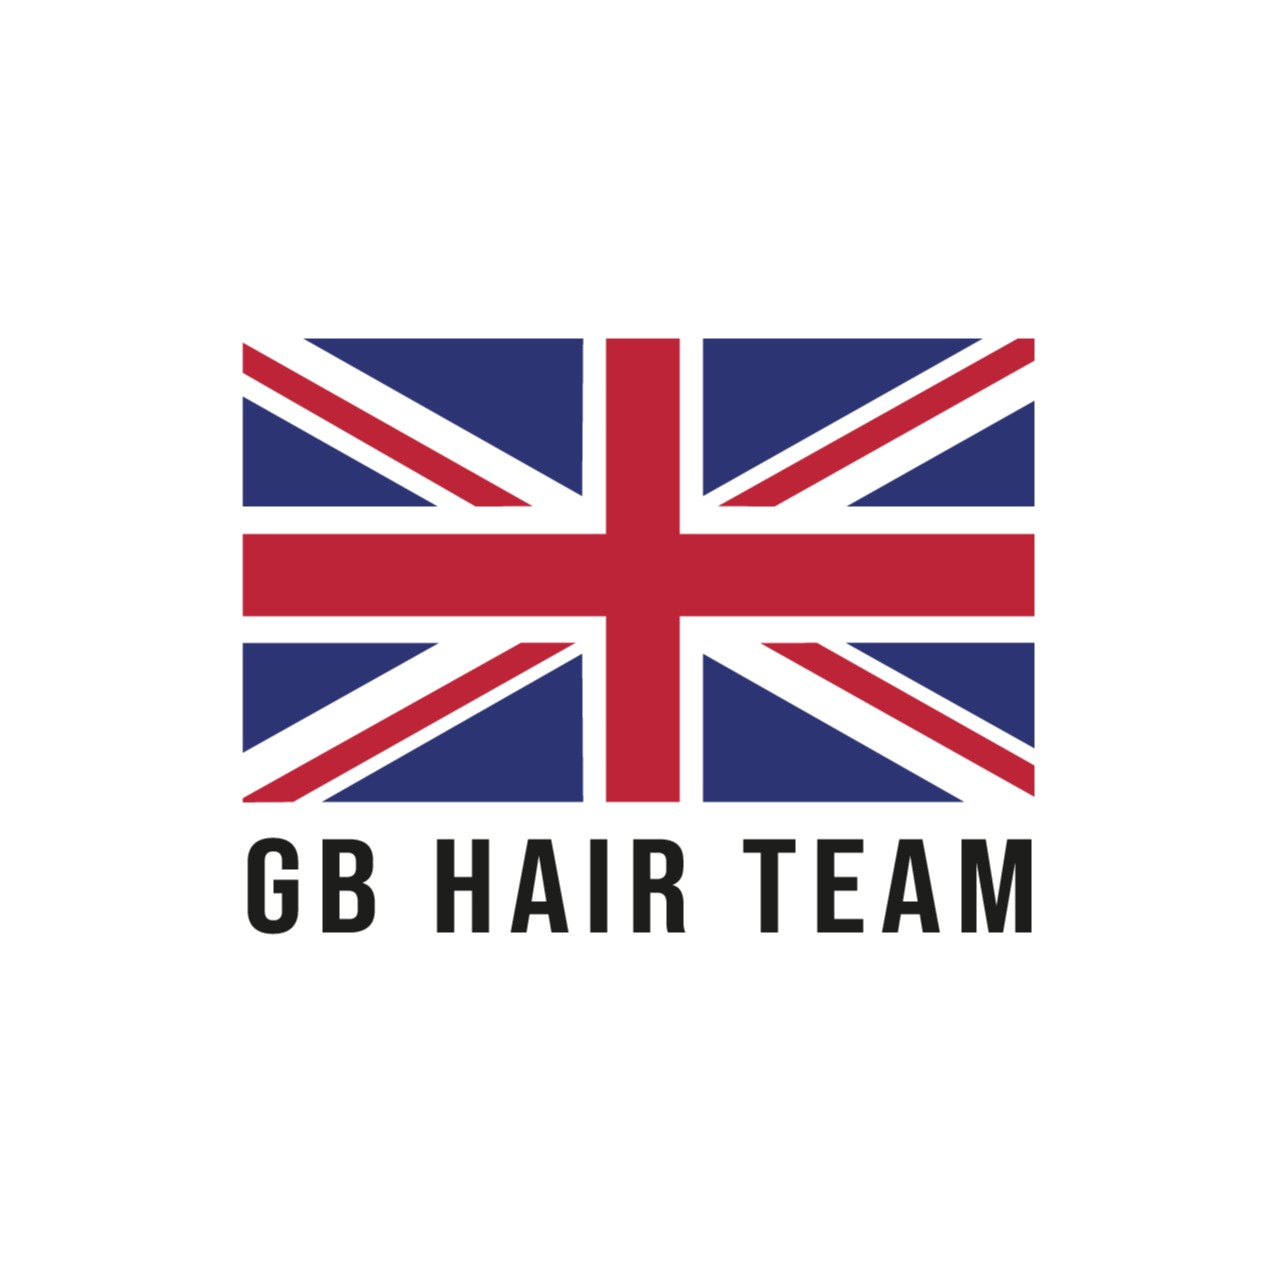 GB Hair Employer Skills Academy